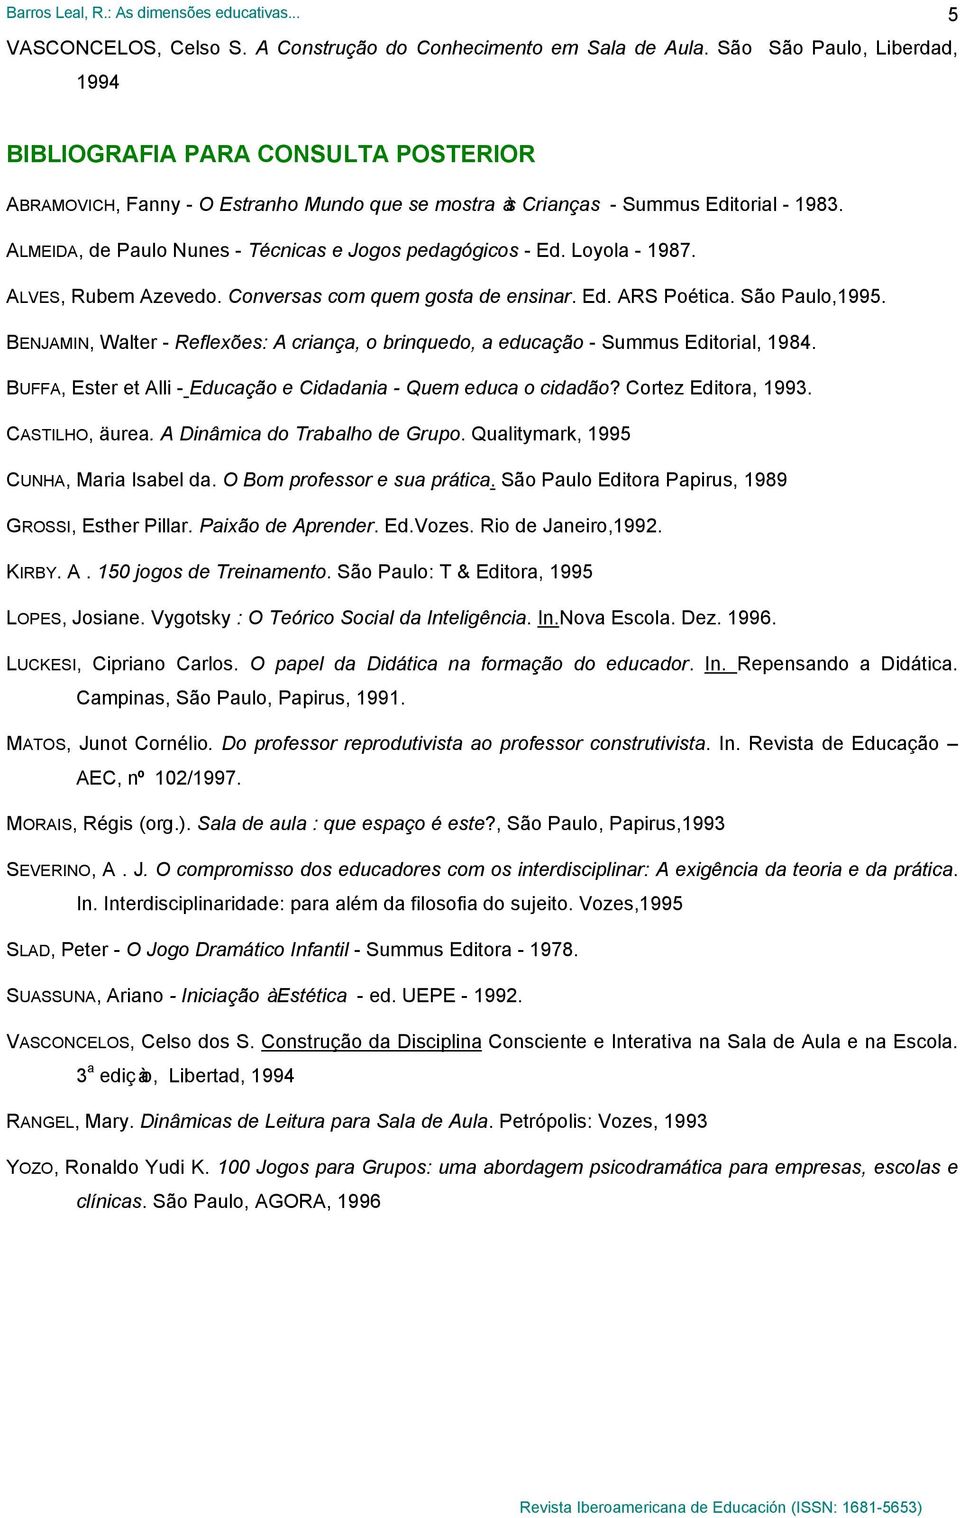 ALMEIDA, de Paulo Nunes - Técnicas e Jogos pedagógicos - Ed. Loyola - 1987. ALVES, Rubem Azevedo. Conversas com quem gosta de ensinar. Ed. ARS Poética. São Paulo,1995.